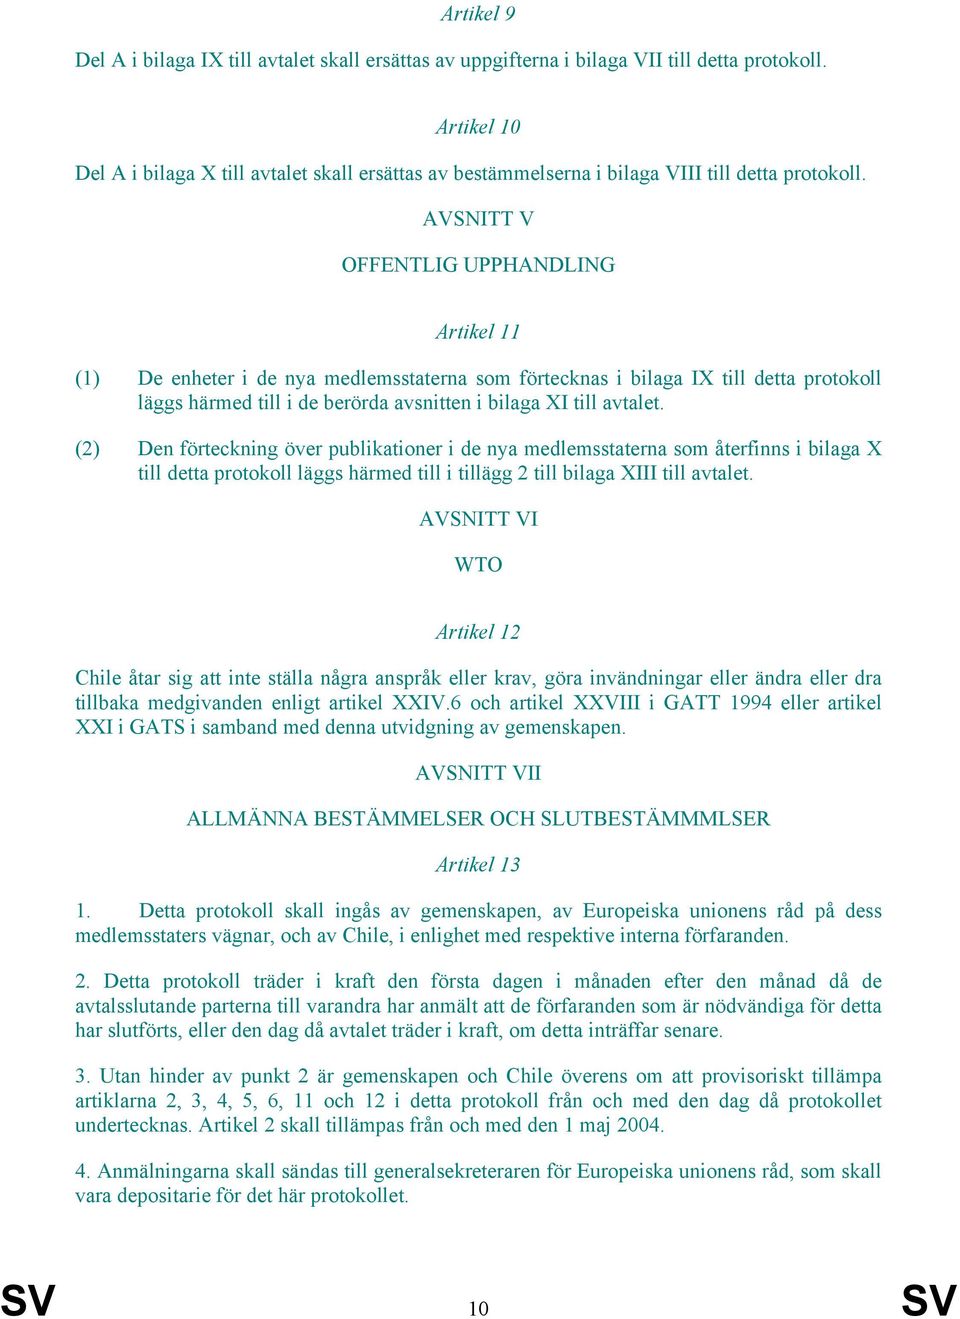 AVSNITT V OFFENTLIG UPPHANDLING Artikel 11 (1) De enheter i de nya medlemsstaterna som förtecknas i bilaga IX till detta protokoll läggs härmed till i de berörda avsnitten i bilaga XI till avtalet.